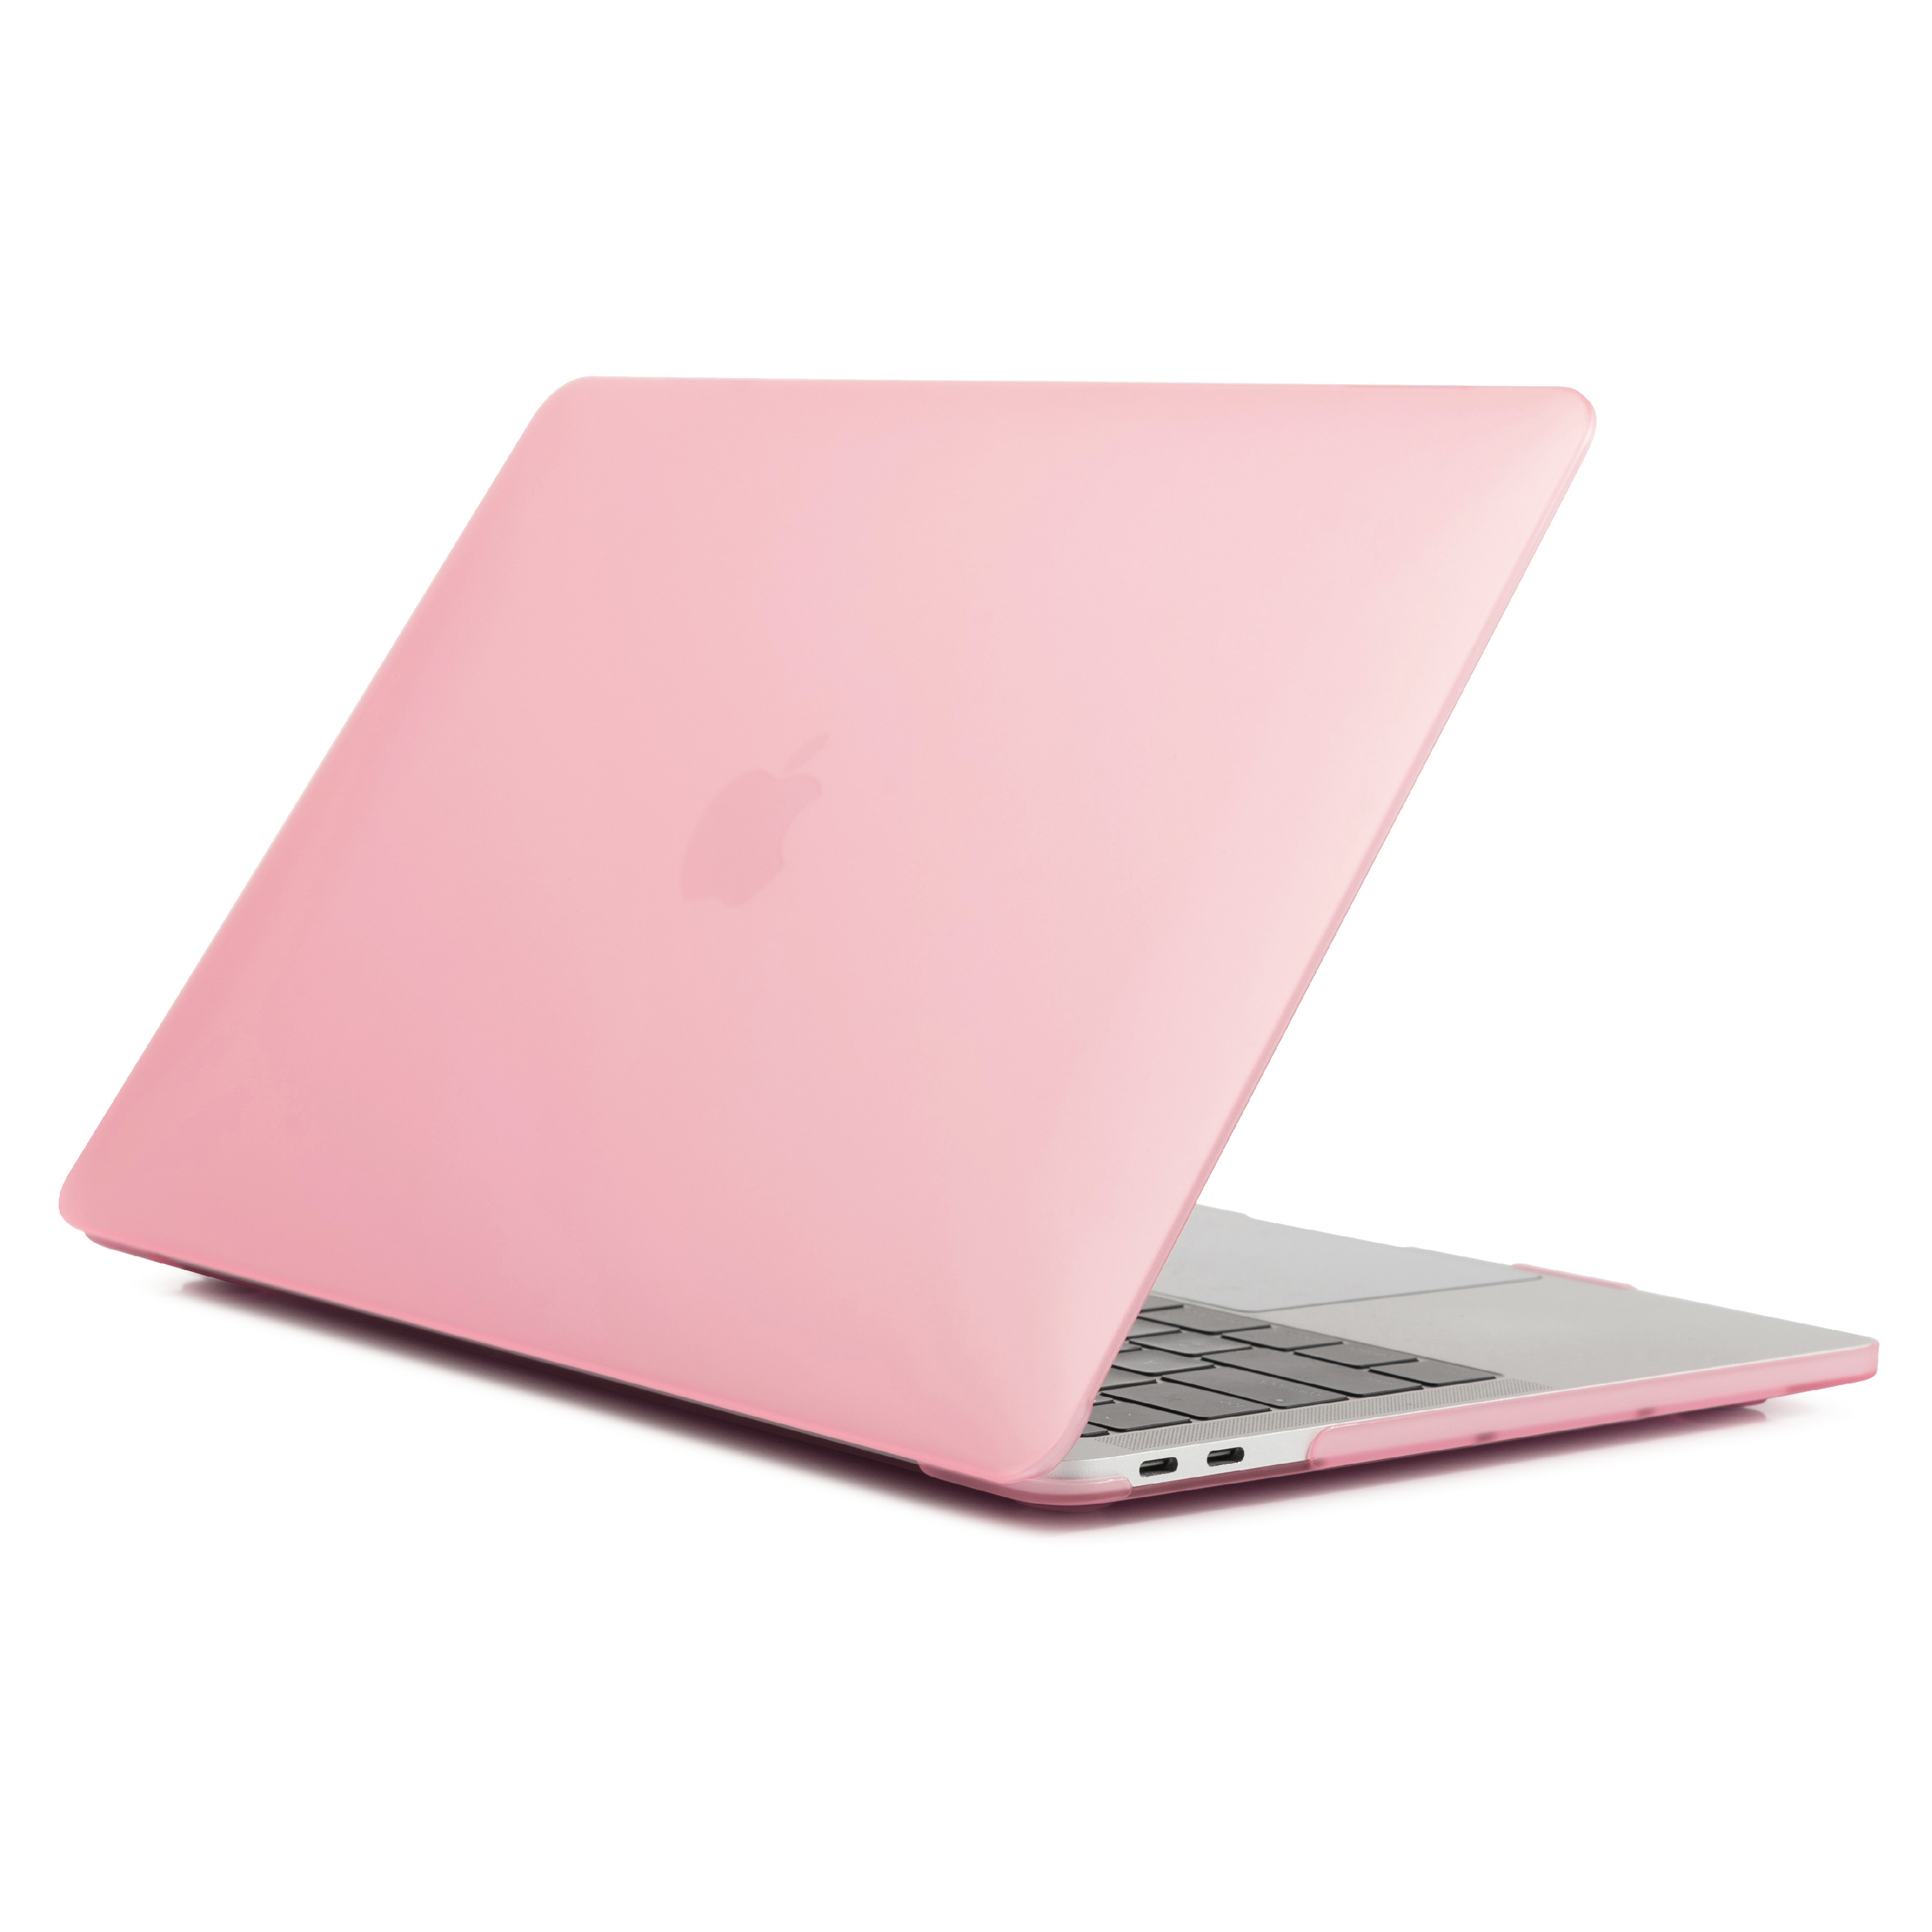 iPouzdro.cz pro MacBook Pro 12 2222221001347 růžová